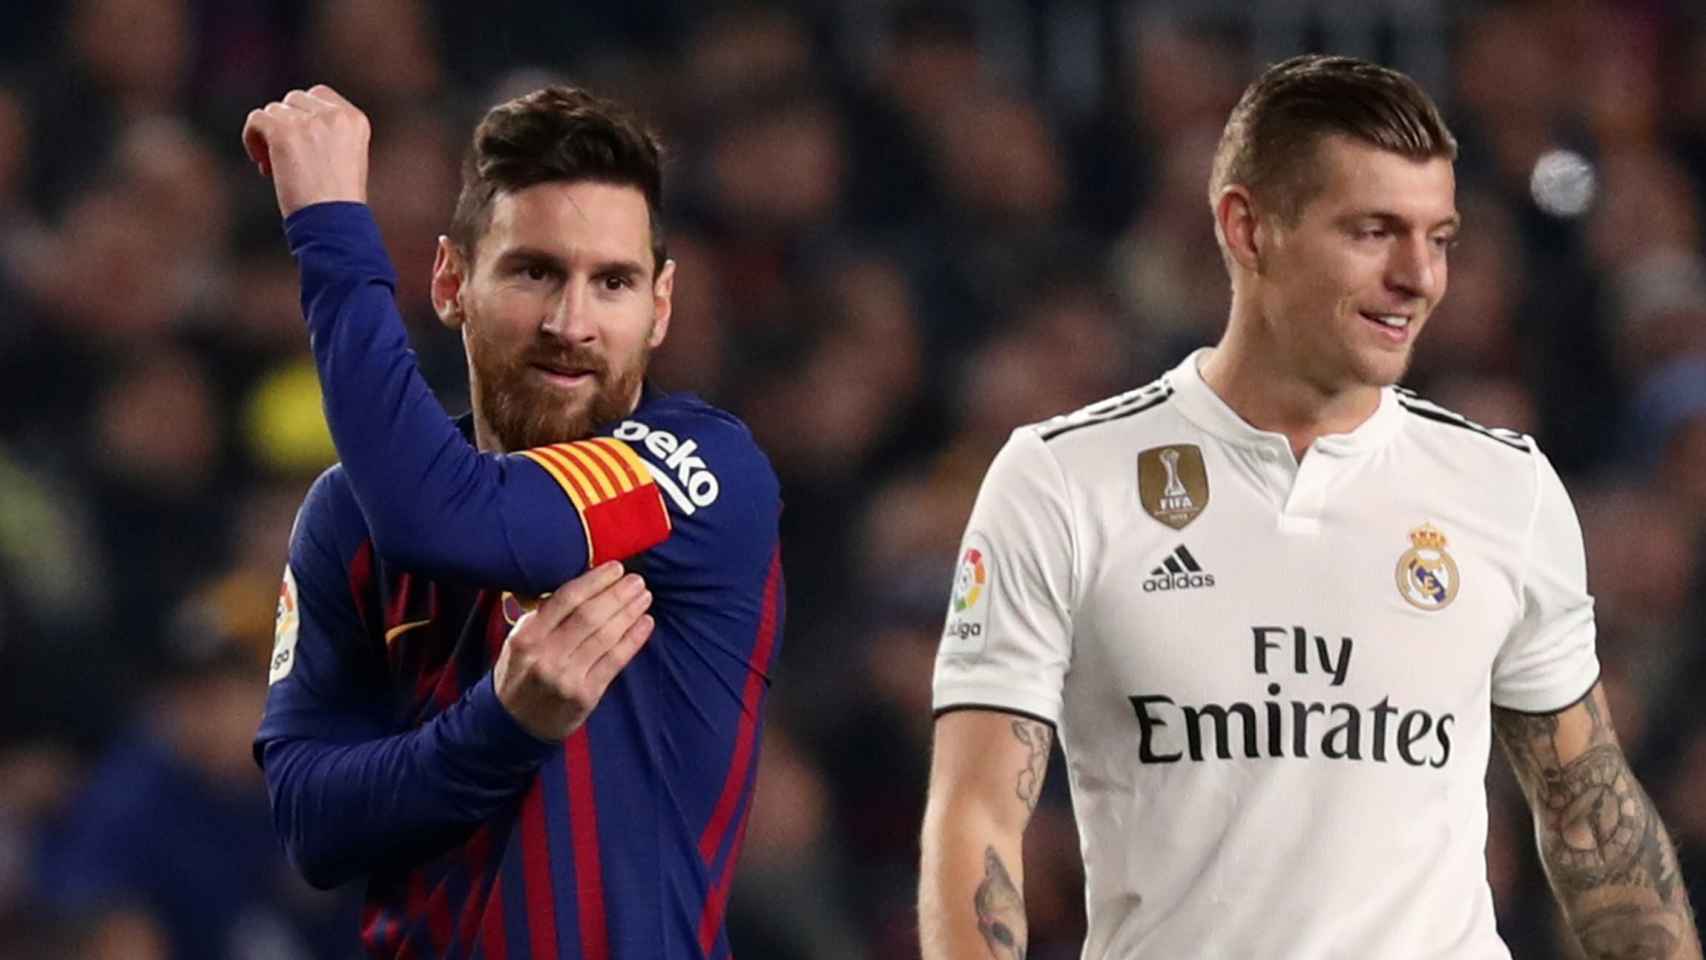 Leo Messi se coloca el brazalete de capitán al entrar al campo